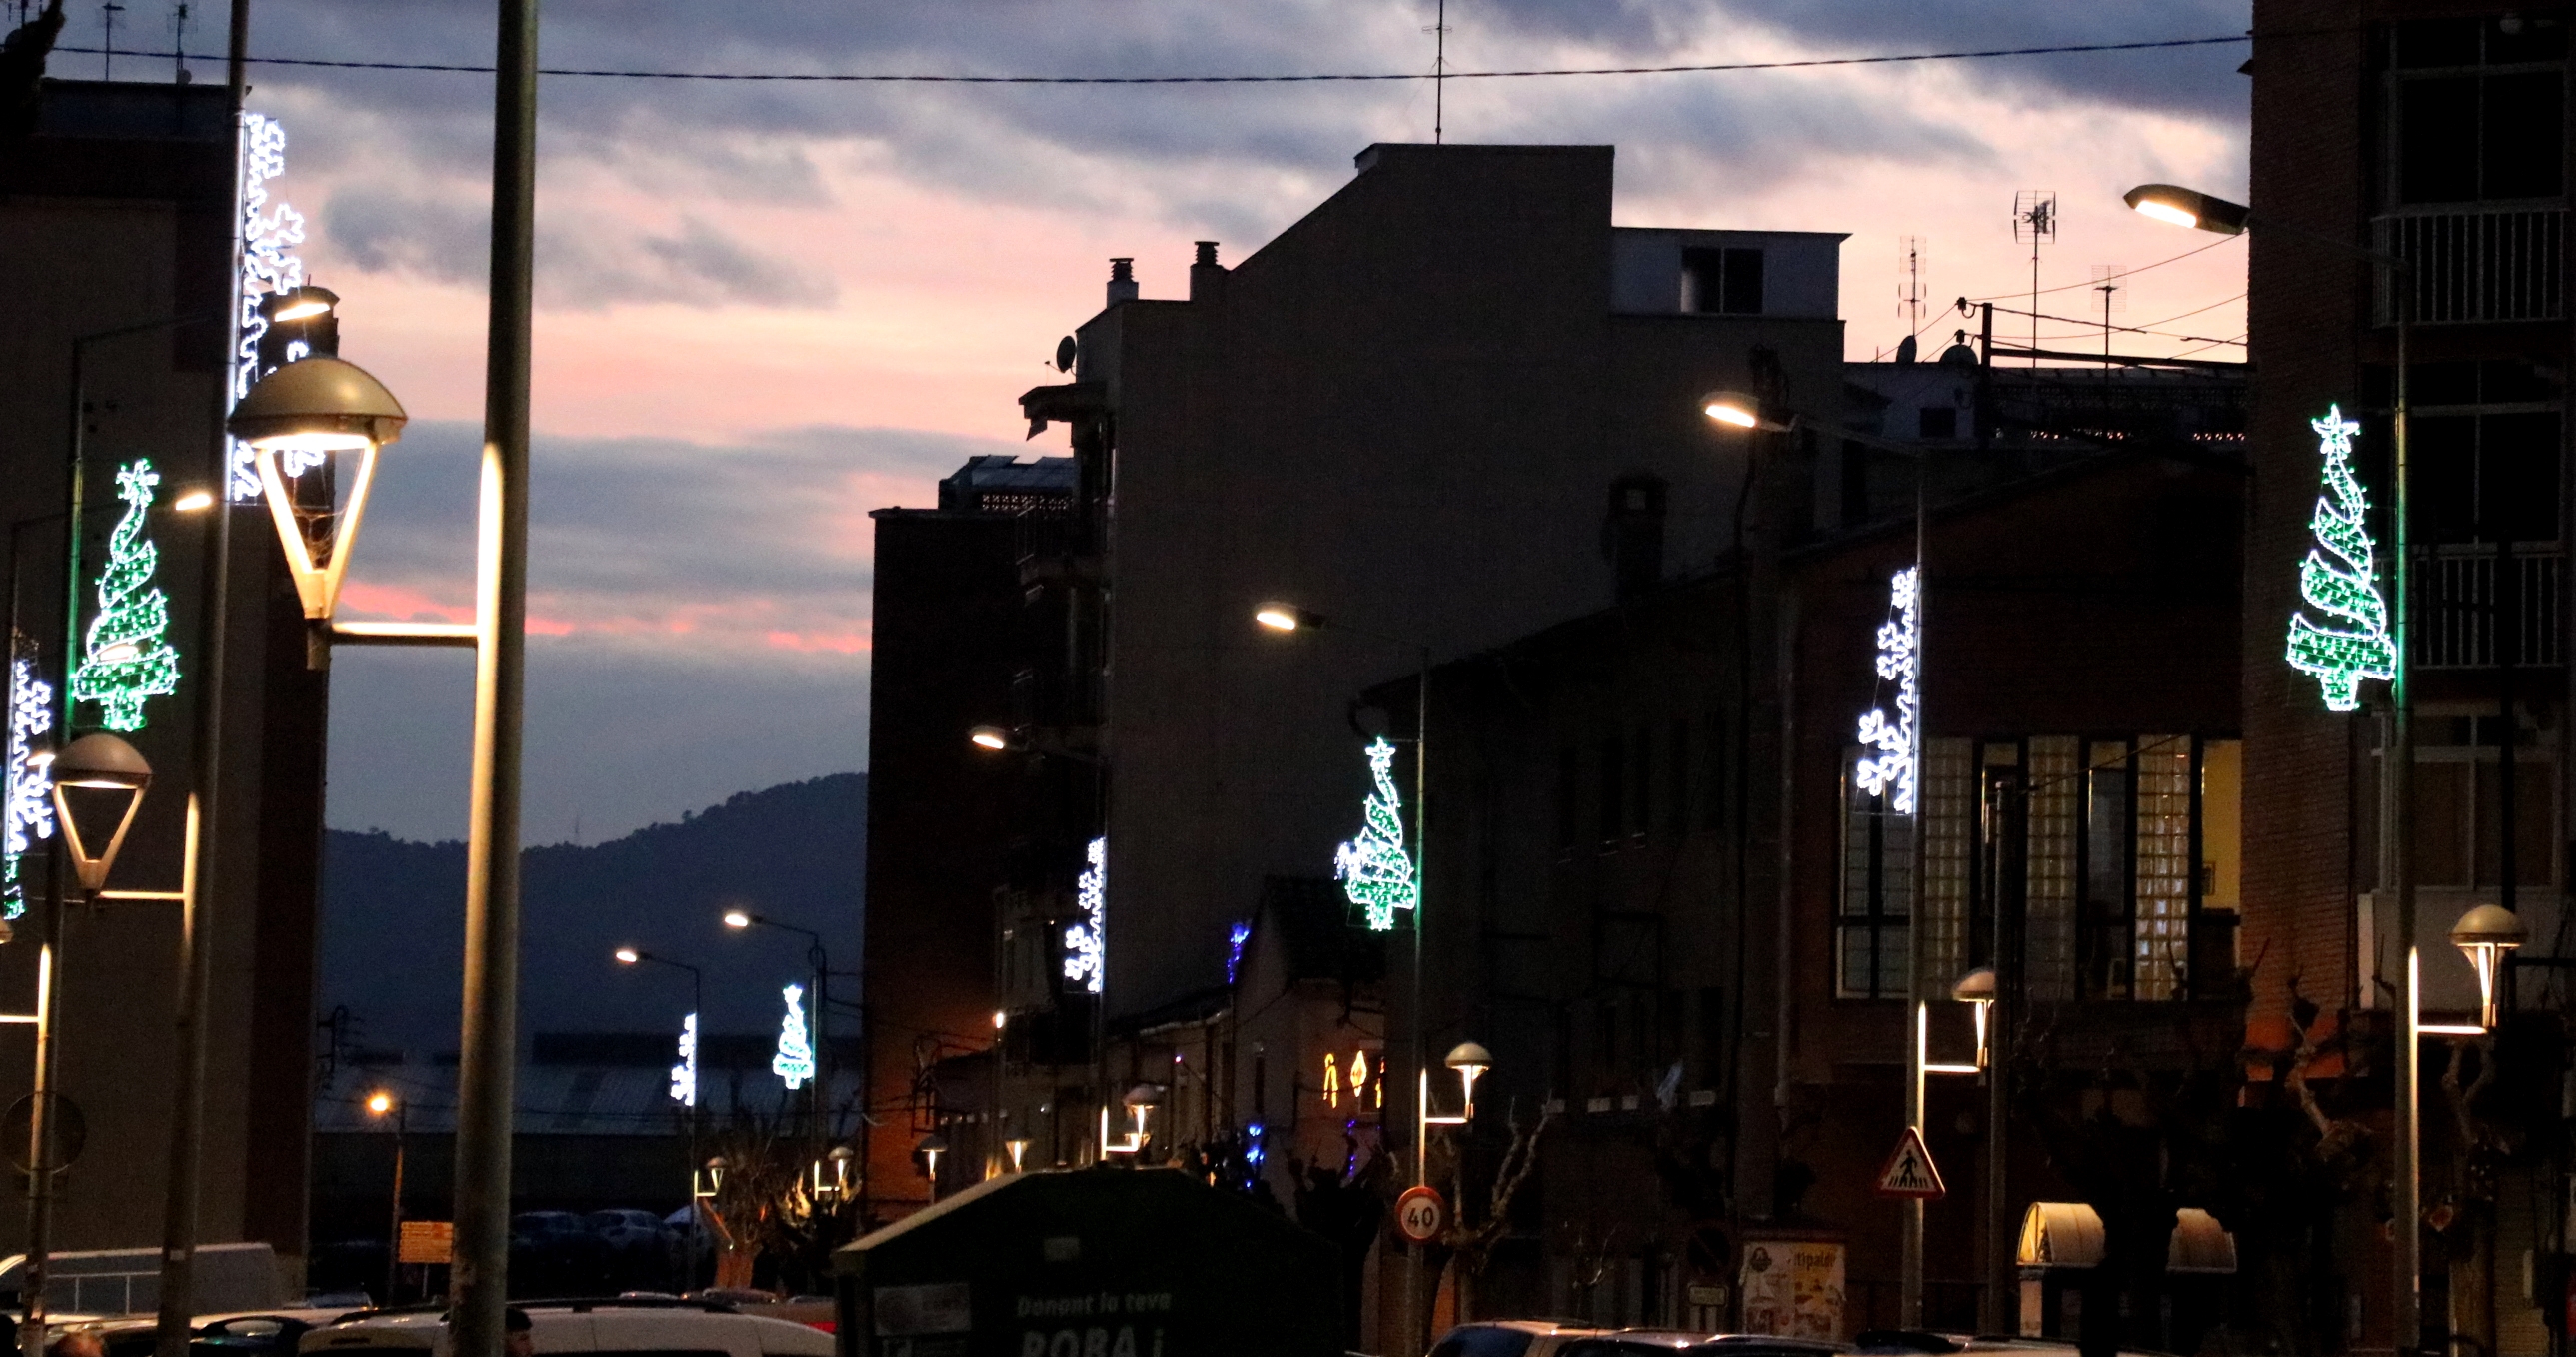 Els carrers de la Llagosta tenen 36 nous llums de Nadal